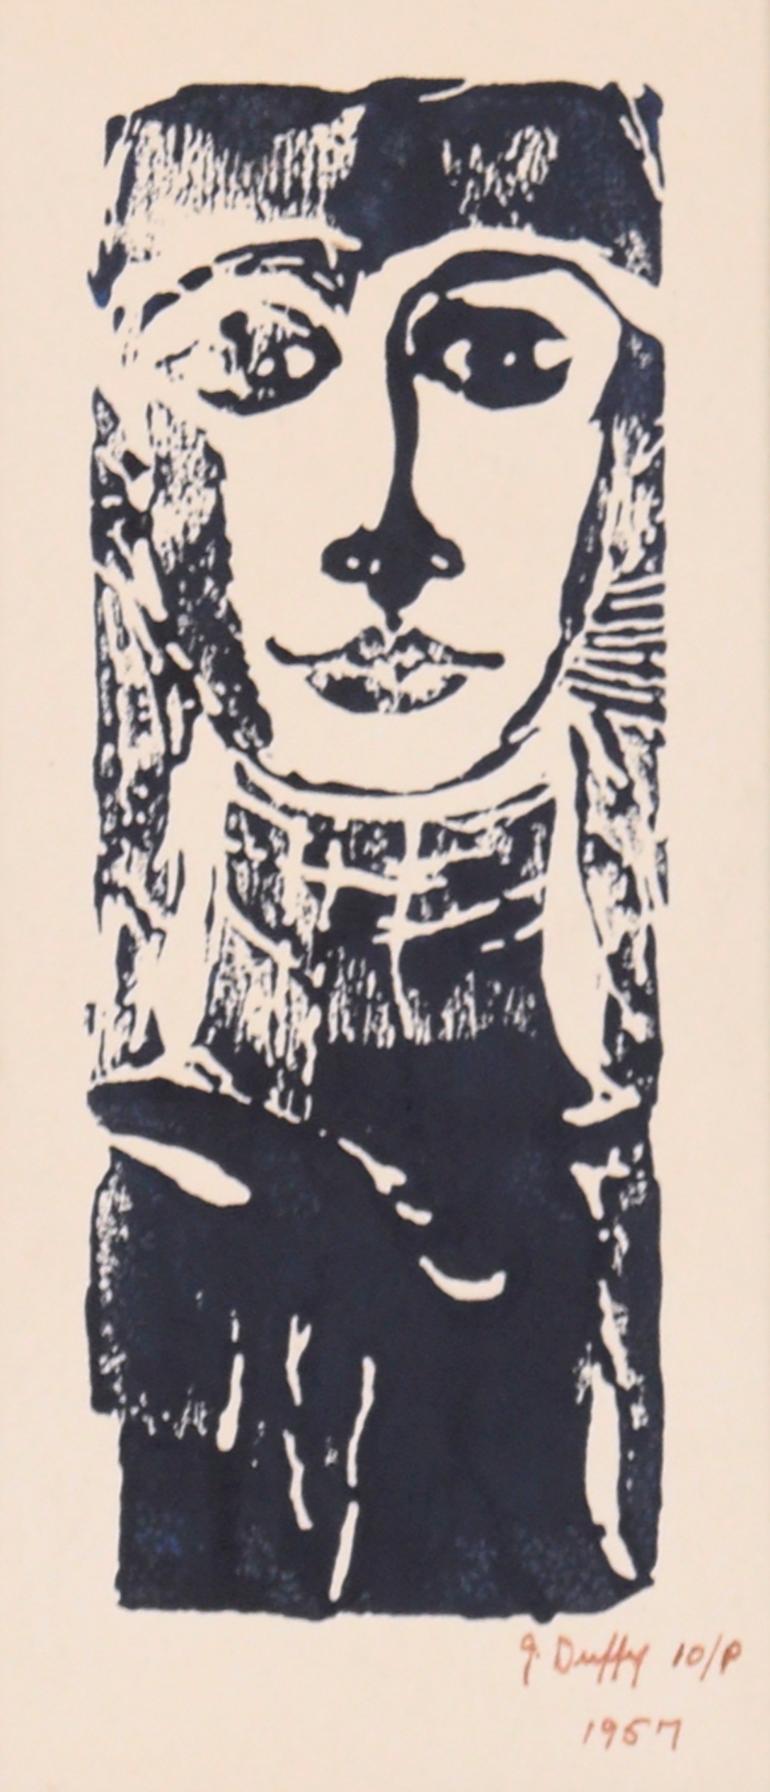 Holzschnitt-Porträt einer Frau – Print von J. Duffy